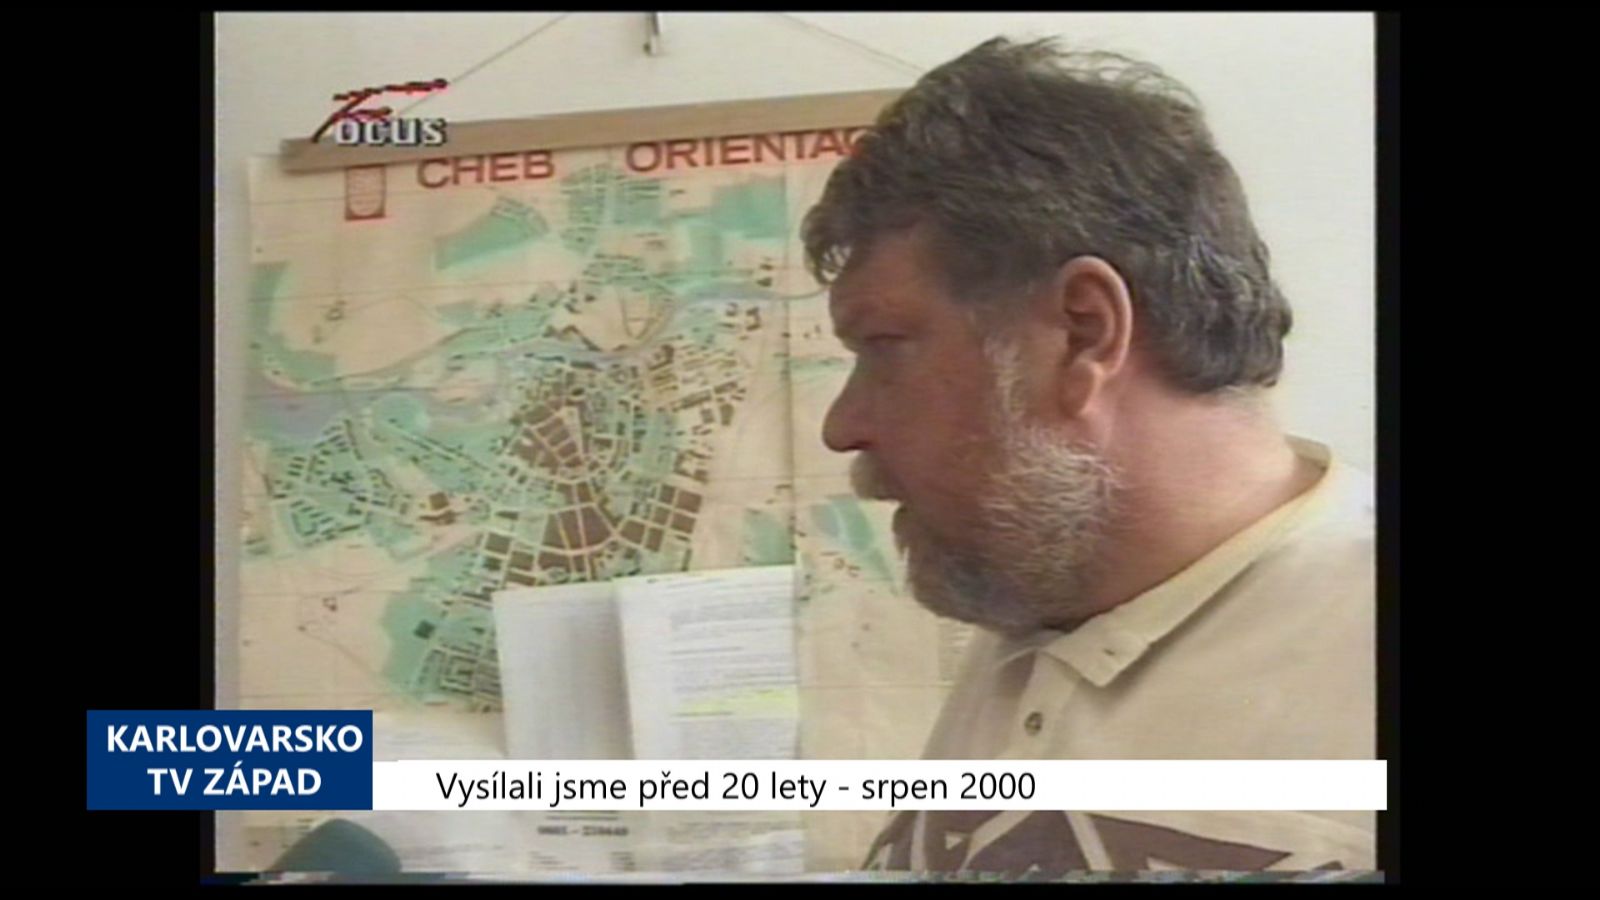 2000 – Cheb: Hladina hluku se ve městě snížila (TV Západ)